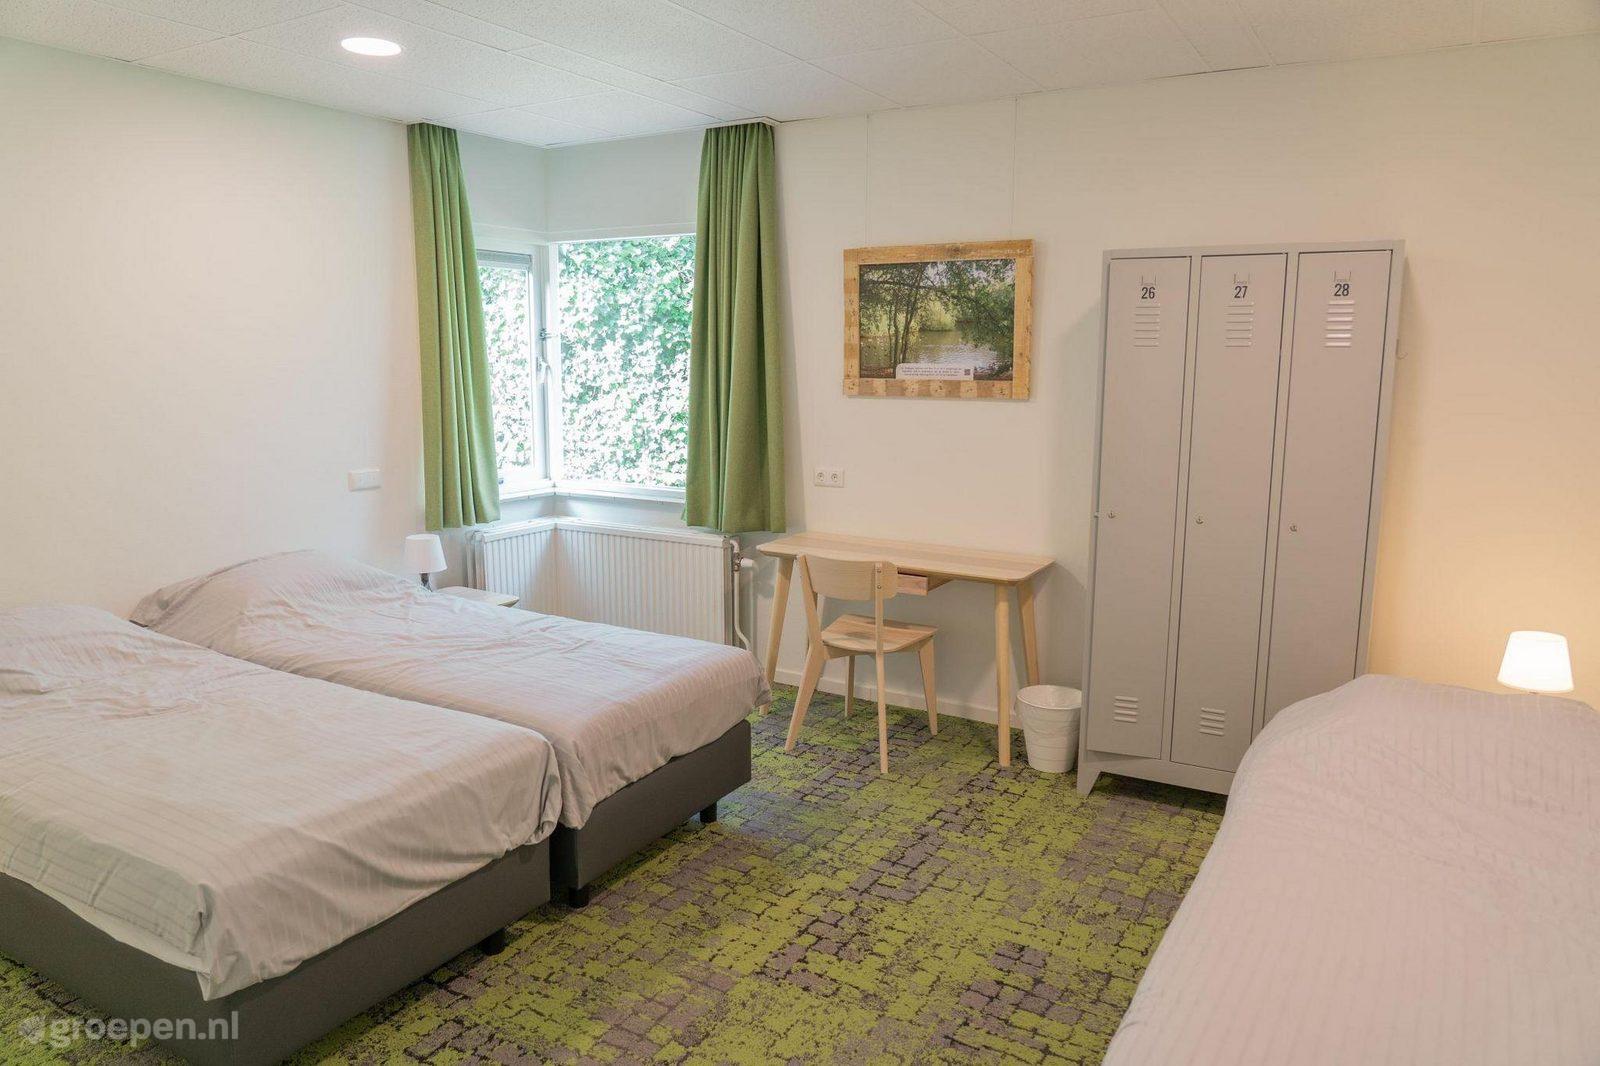 Group accommodation Den Helder